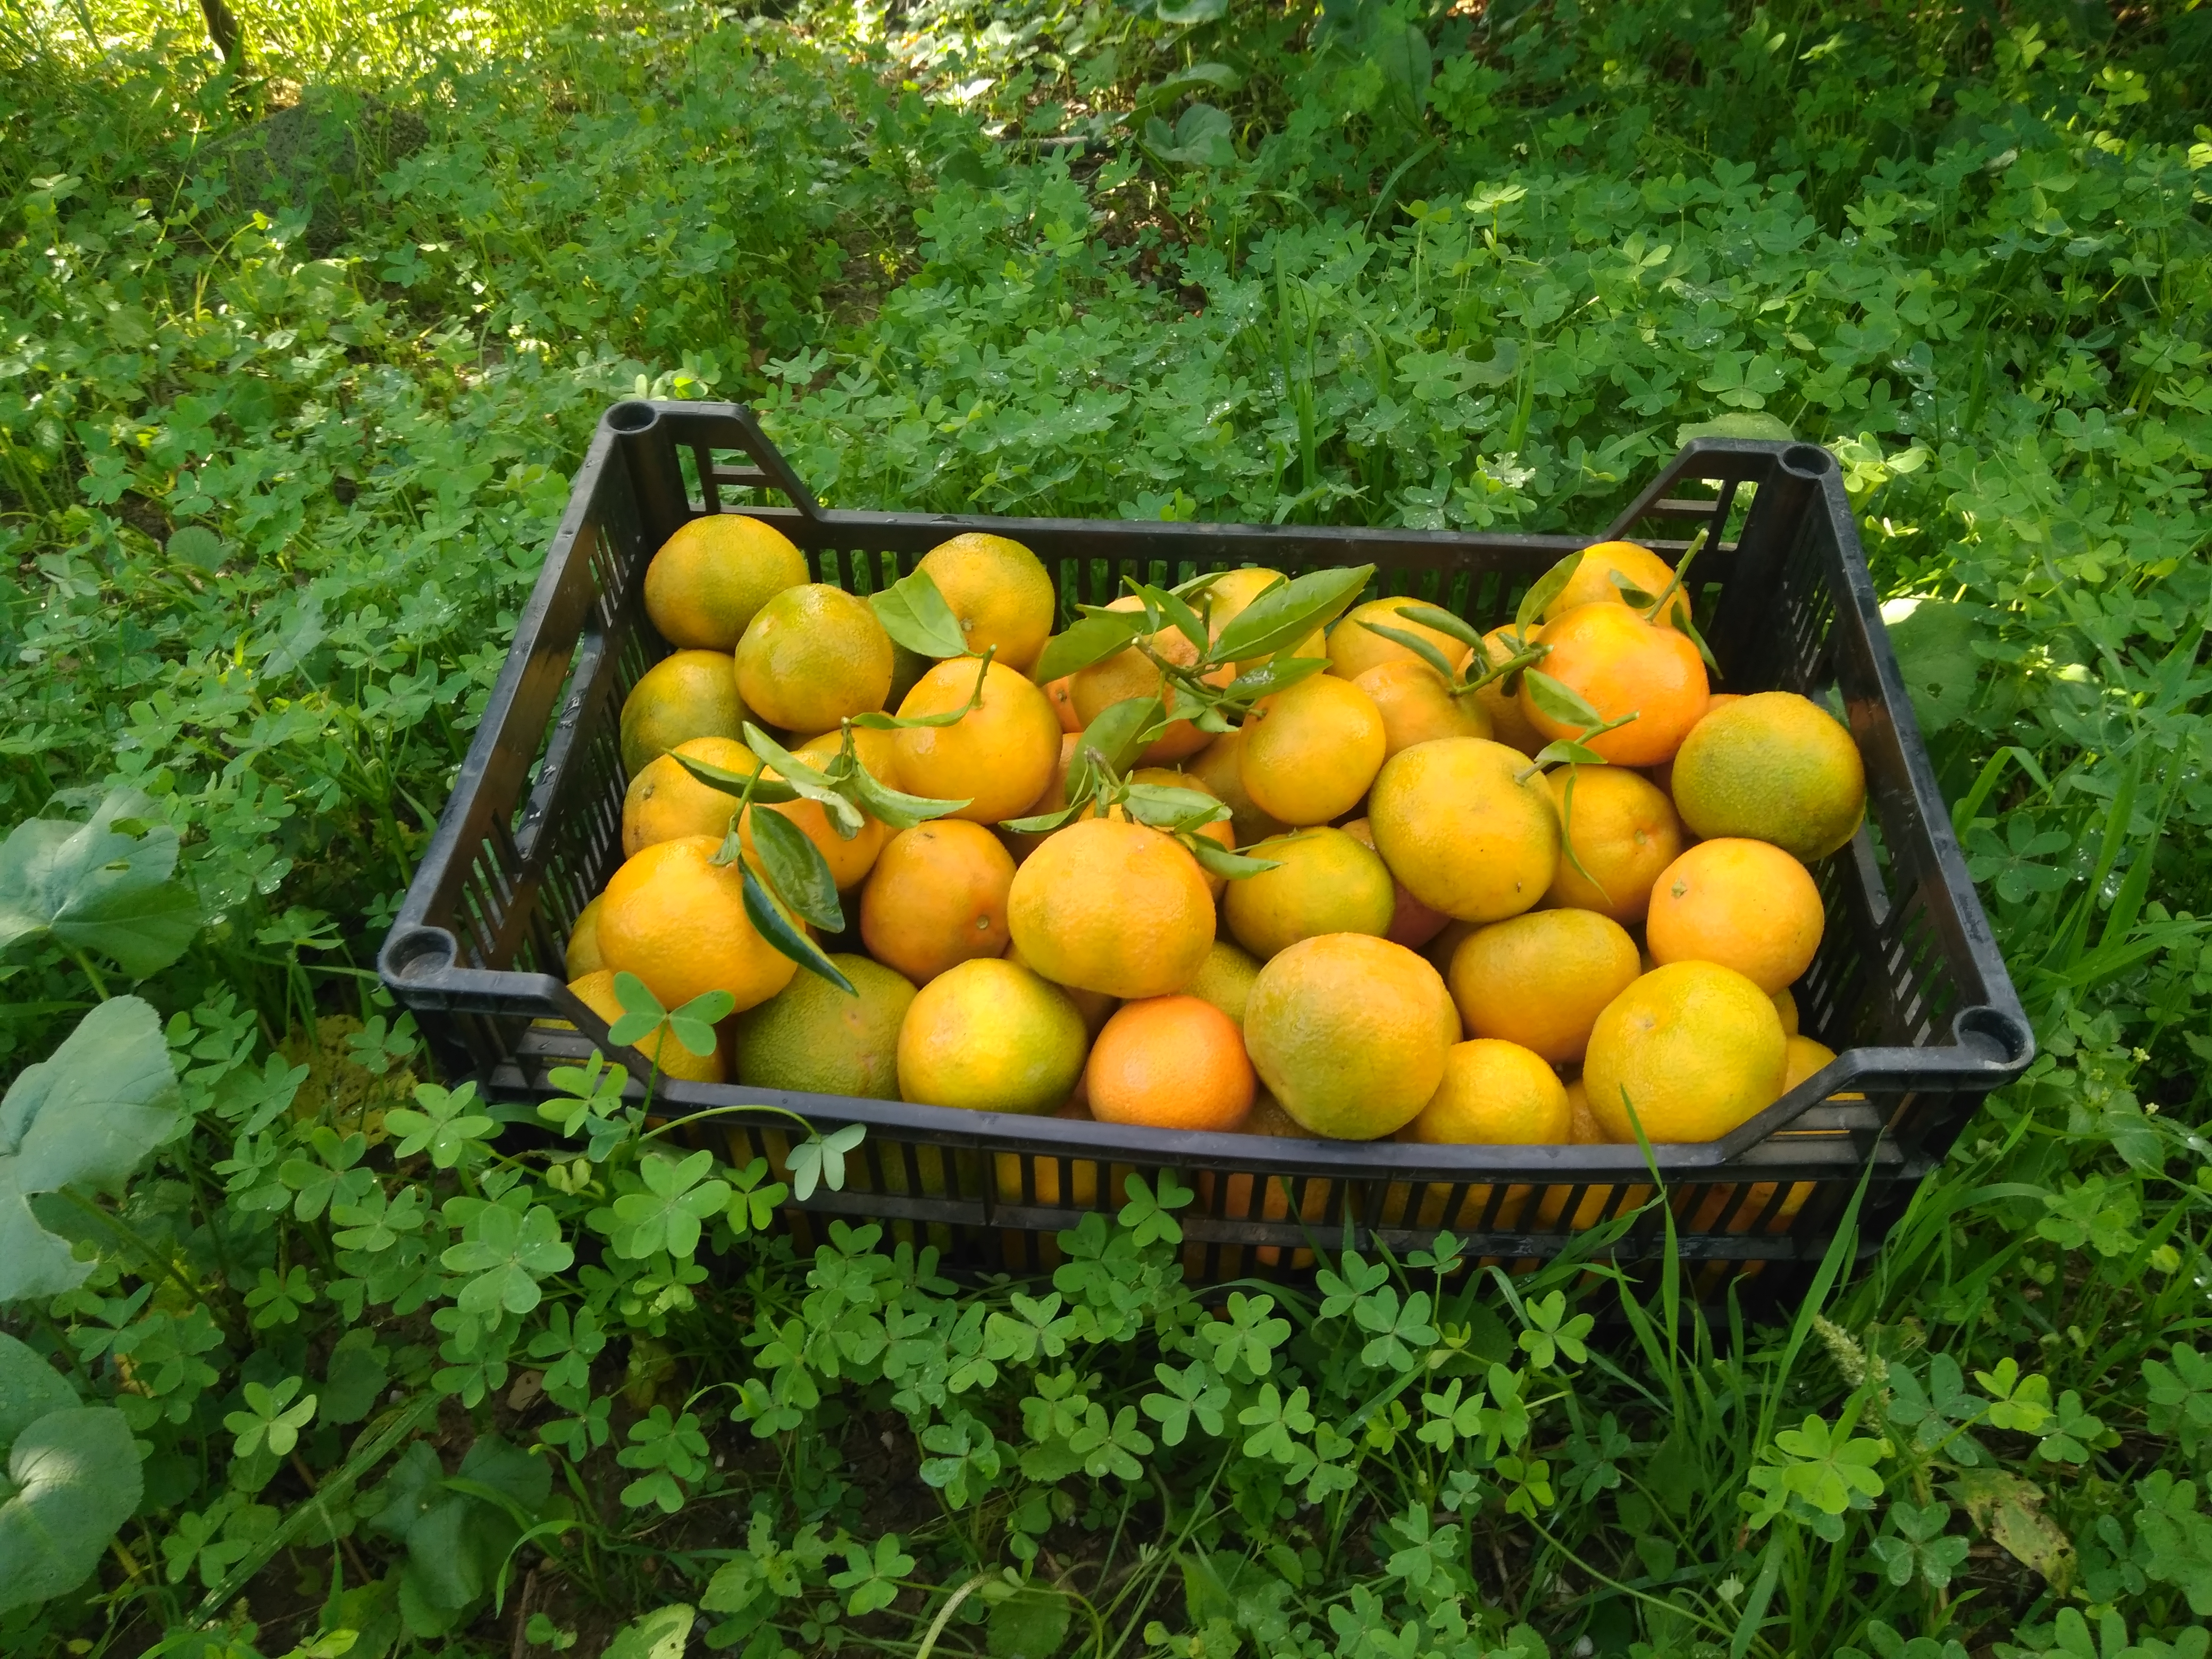 Caja mixta de naranjas y mandarinas 10kg